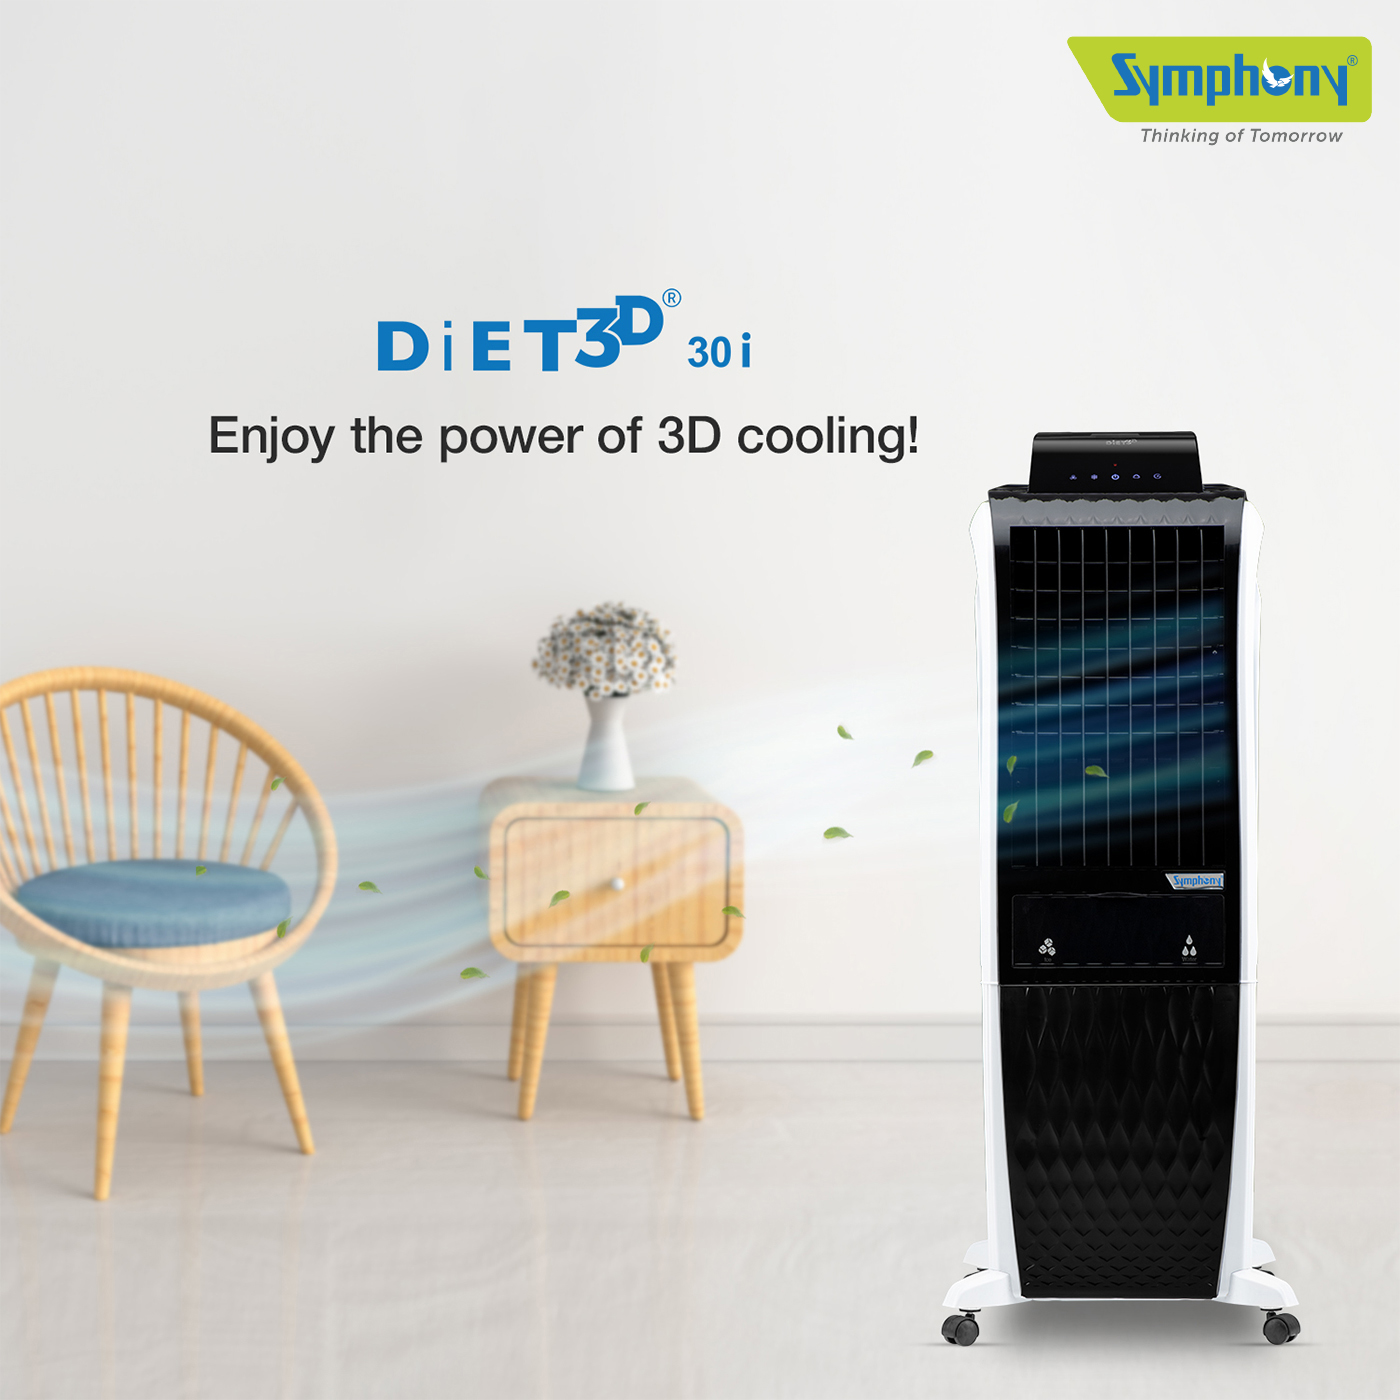 Personal Air Cooler - Diet 3D 30i Air Cooler